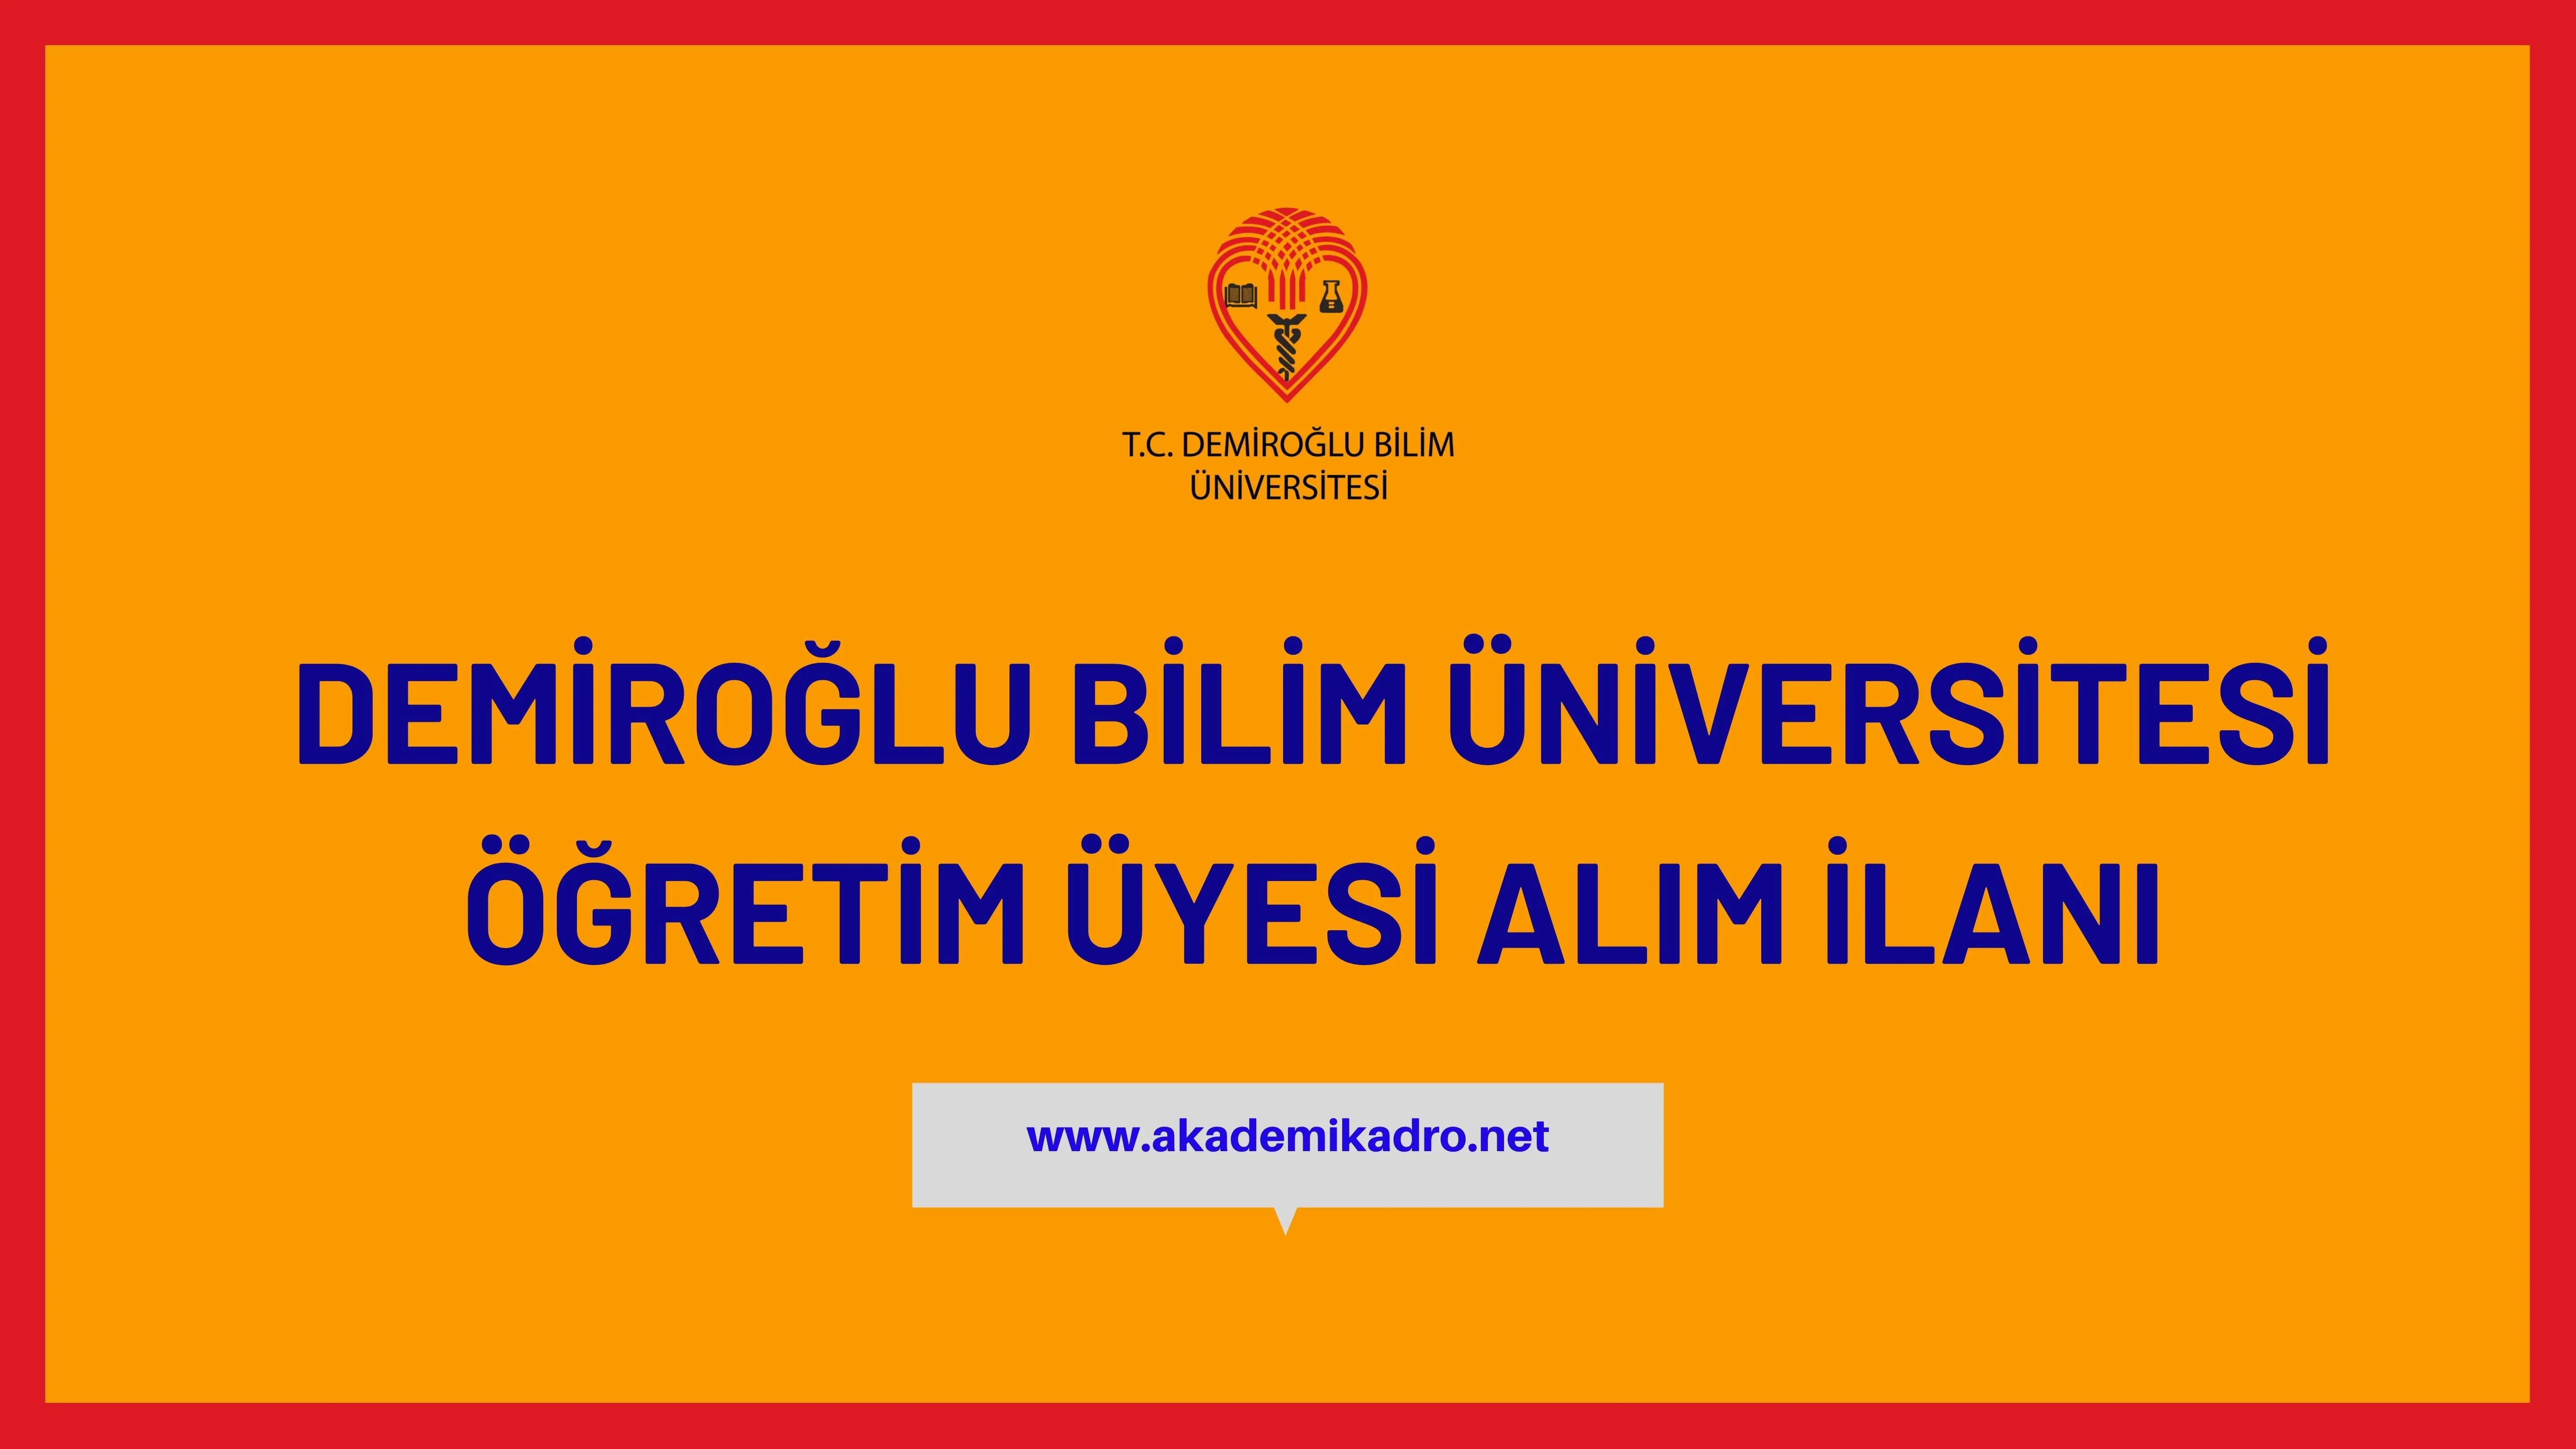 Demiroğlu Bilim Üniversitesi çeşitli branşlarda 4 öğretim üyesi alacak.